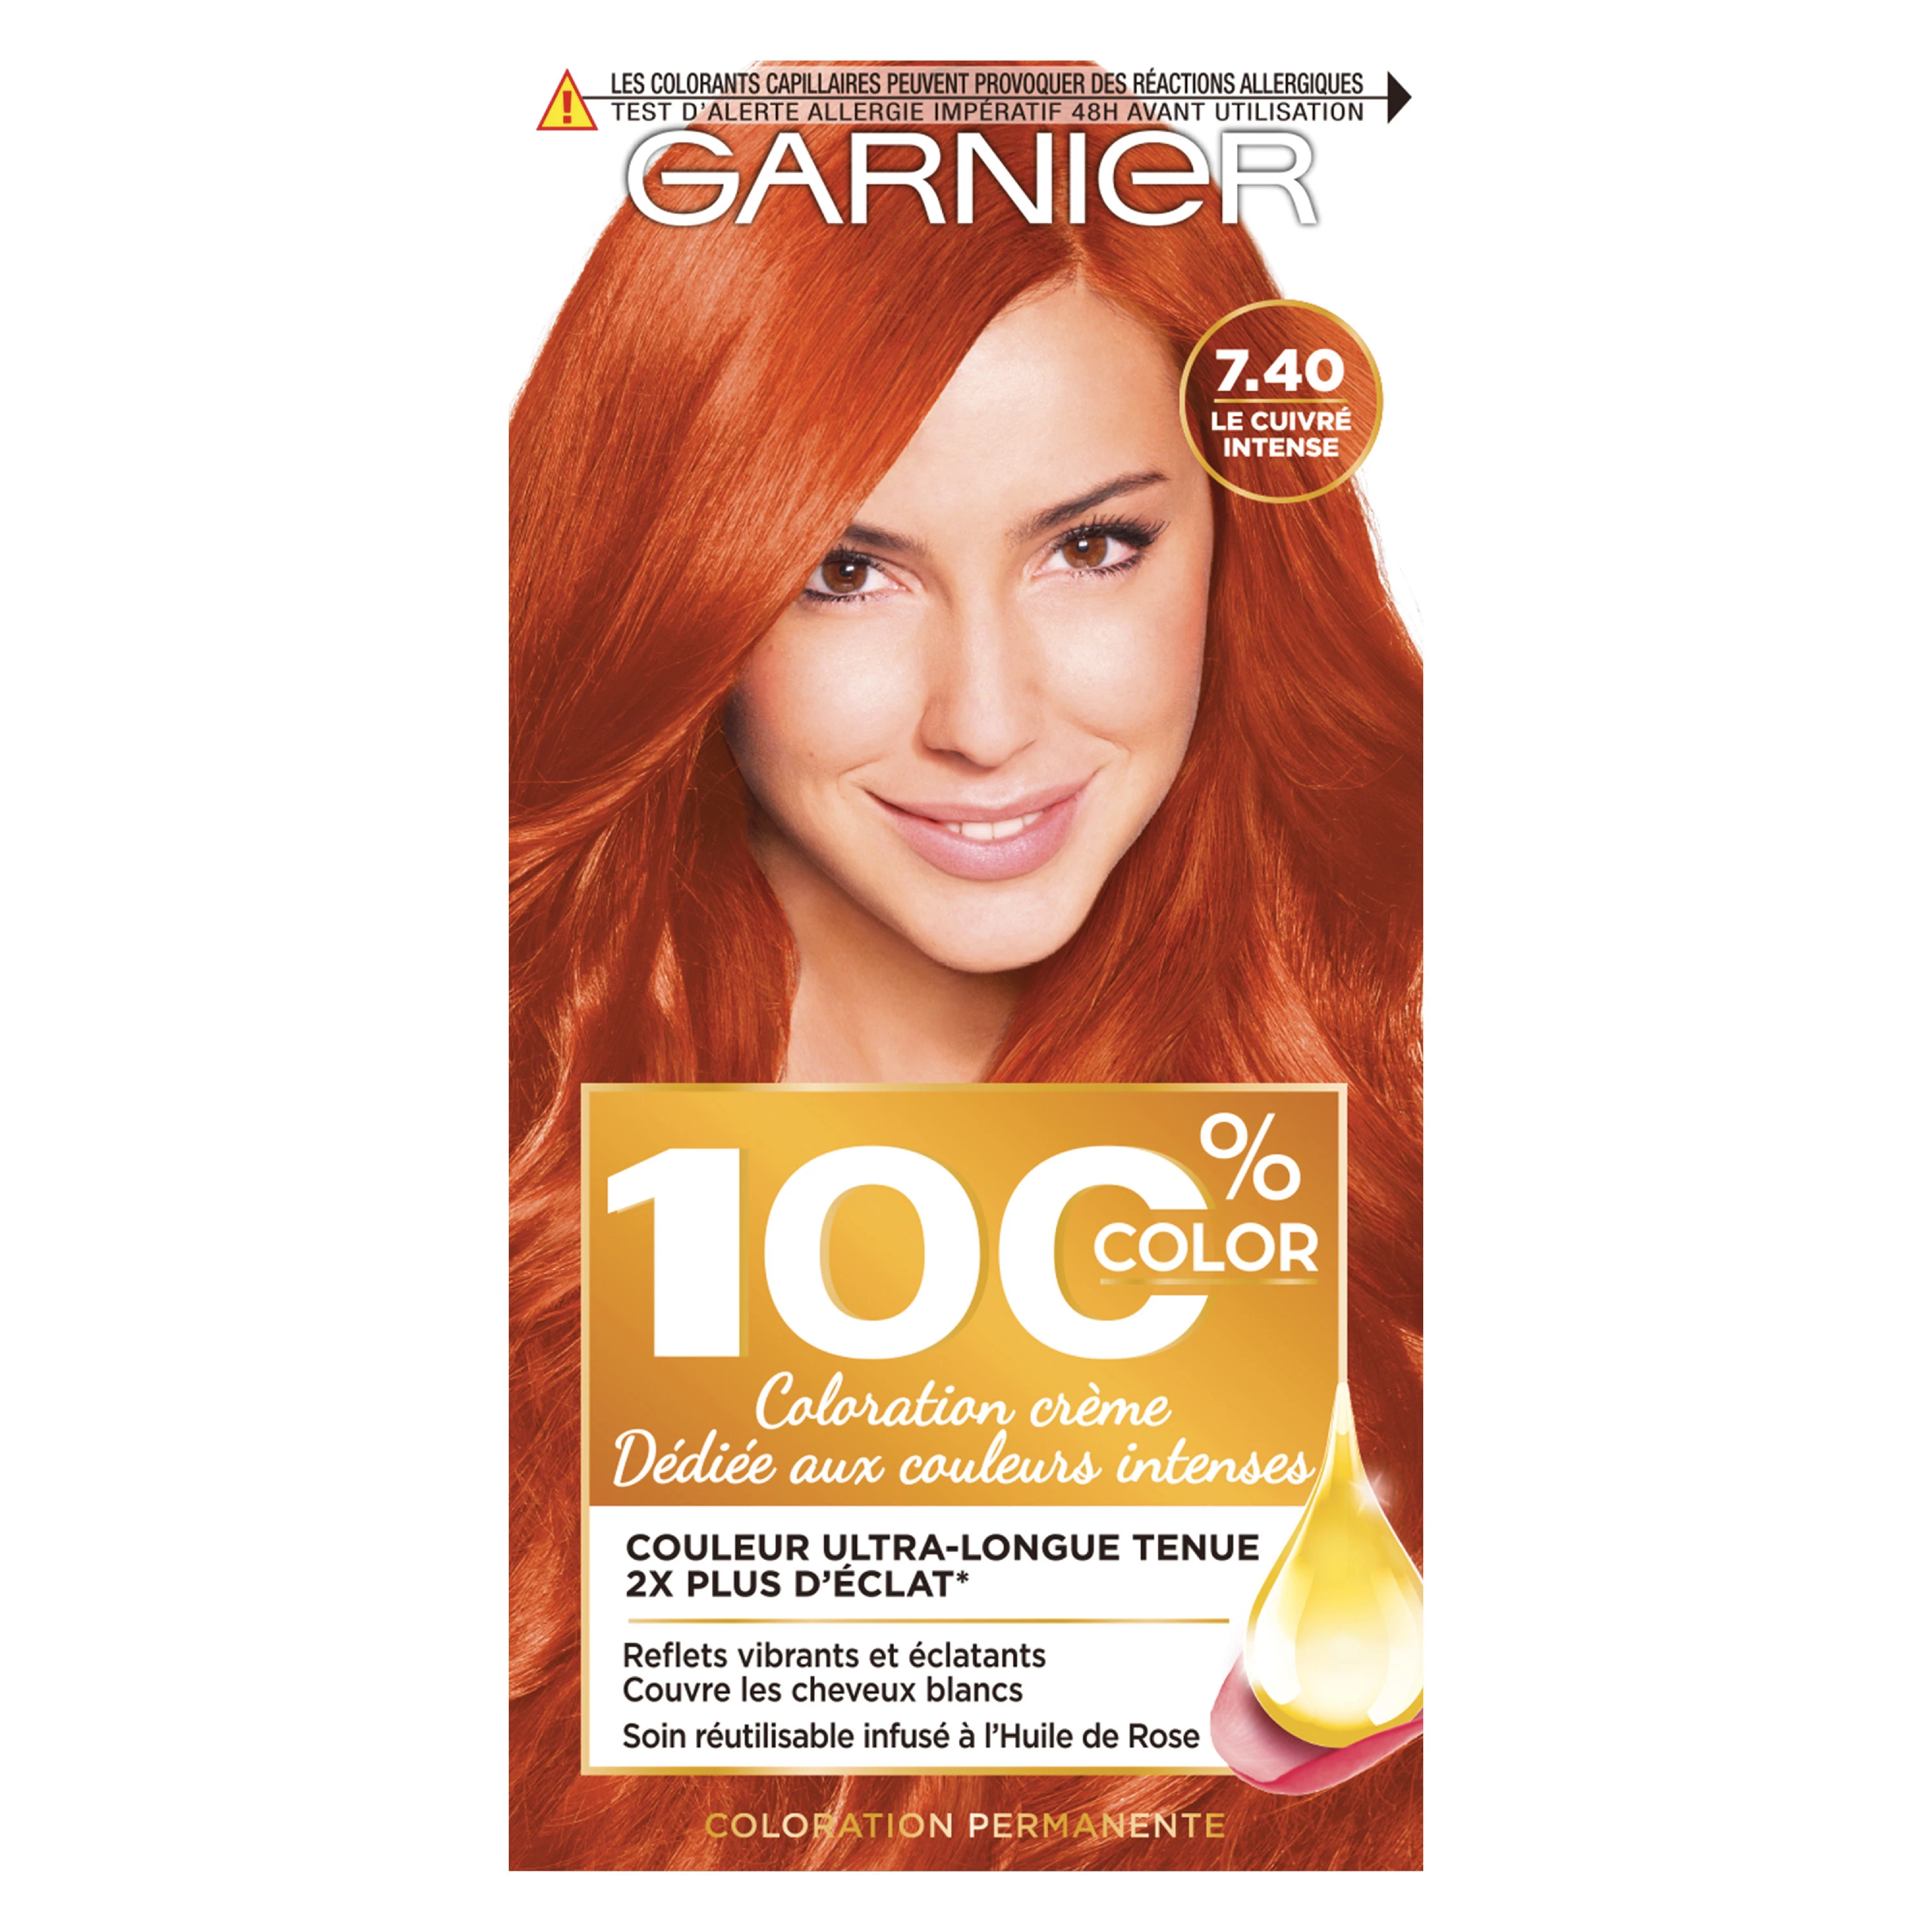 Coloration cheveux permanente 7.40 Le Cuivré Intense 100% COLOR - GARNIER